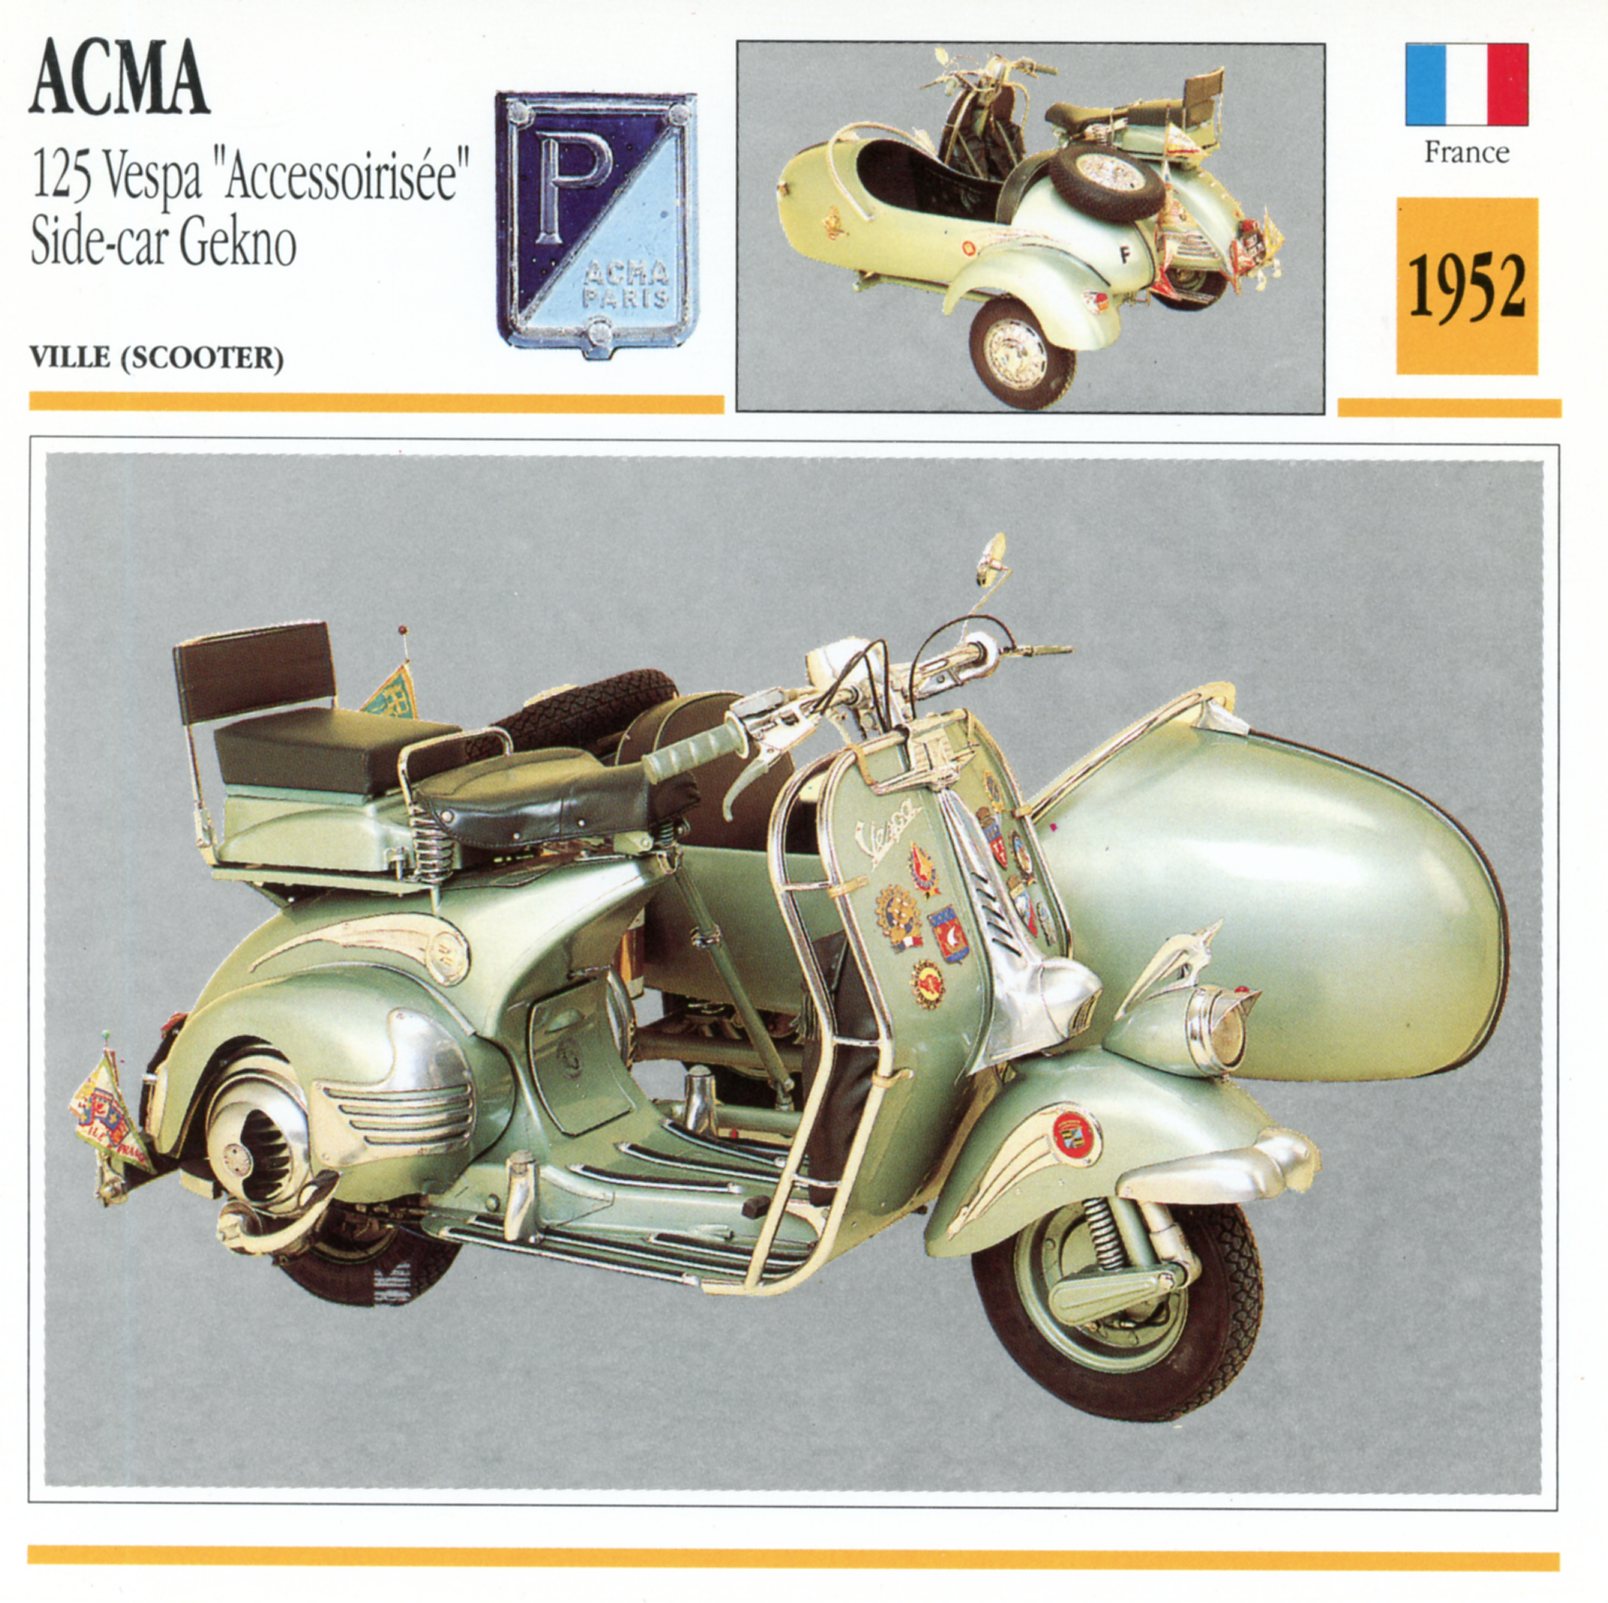 ACMA VESPA SIDE-CAR GEKNO  1952 - CARTE CARD PIAGGIO FICHE SCOOTER CARACTERISTIQUES